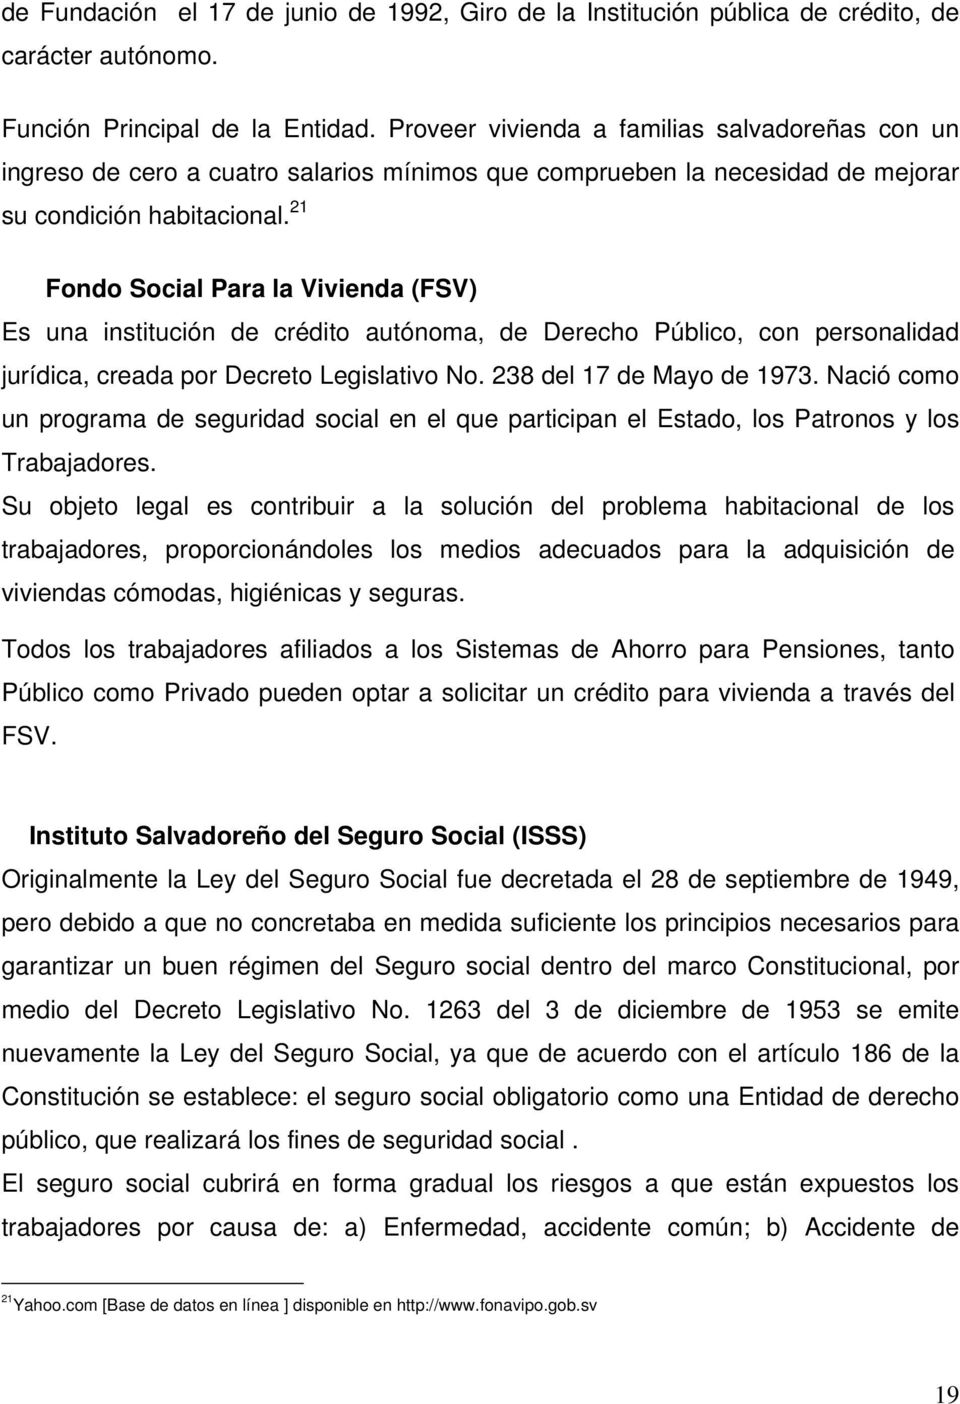 21 Fondo Social Para la Vivienda (FSV) Es una institución de crédito autónoma, de Derecho Público, con personalidad jurídica, creada por Decreto Legislativo No. 238 del 17 de Mayo de 1973.